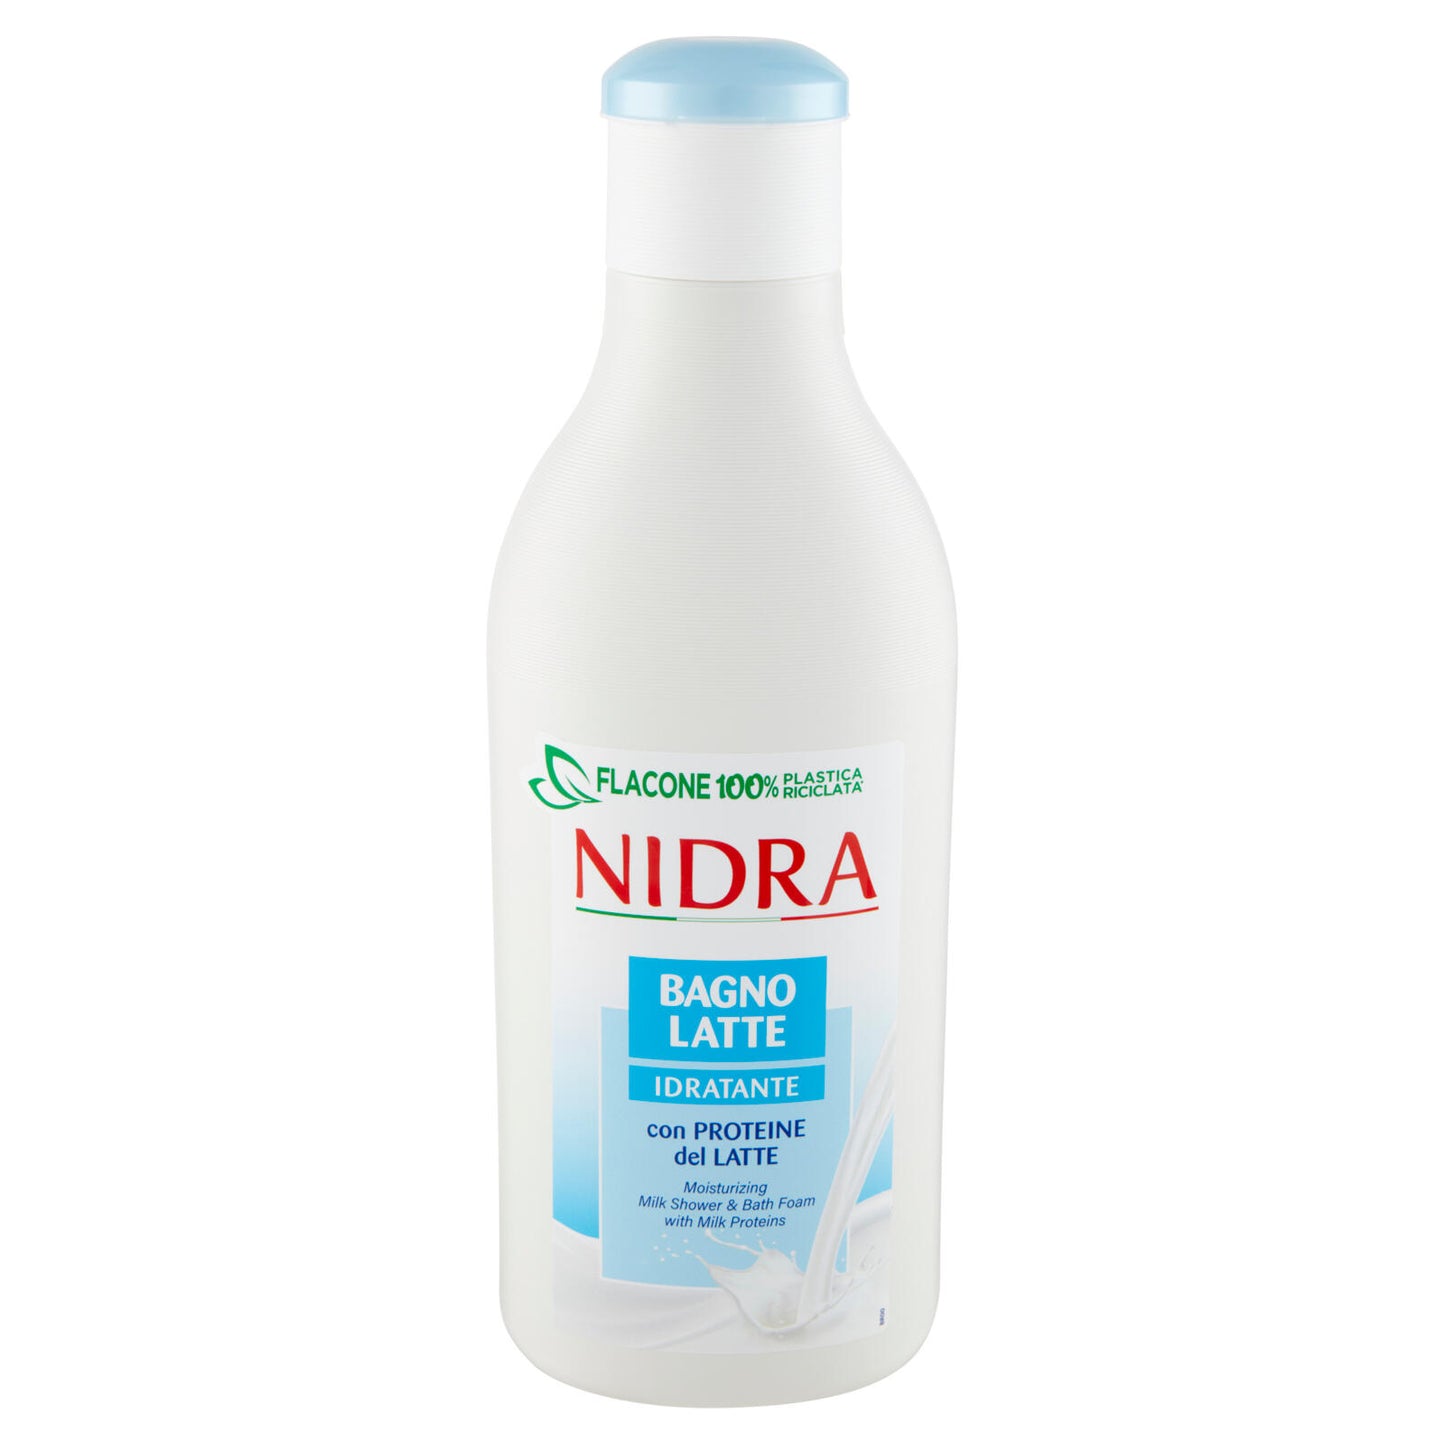 Nidra Bagno Latte Idratante con Proteine del Latte 750 mL